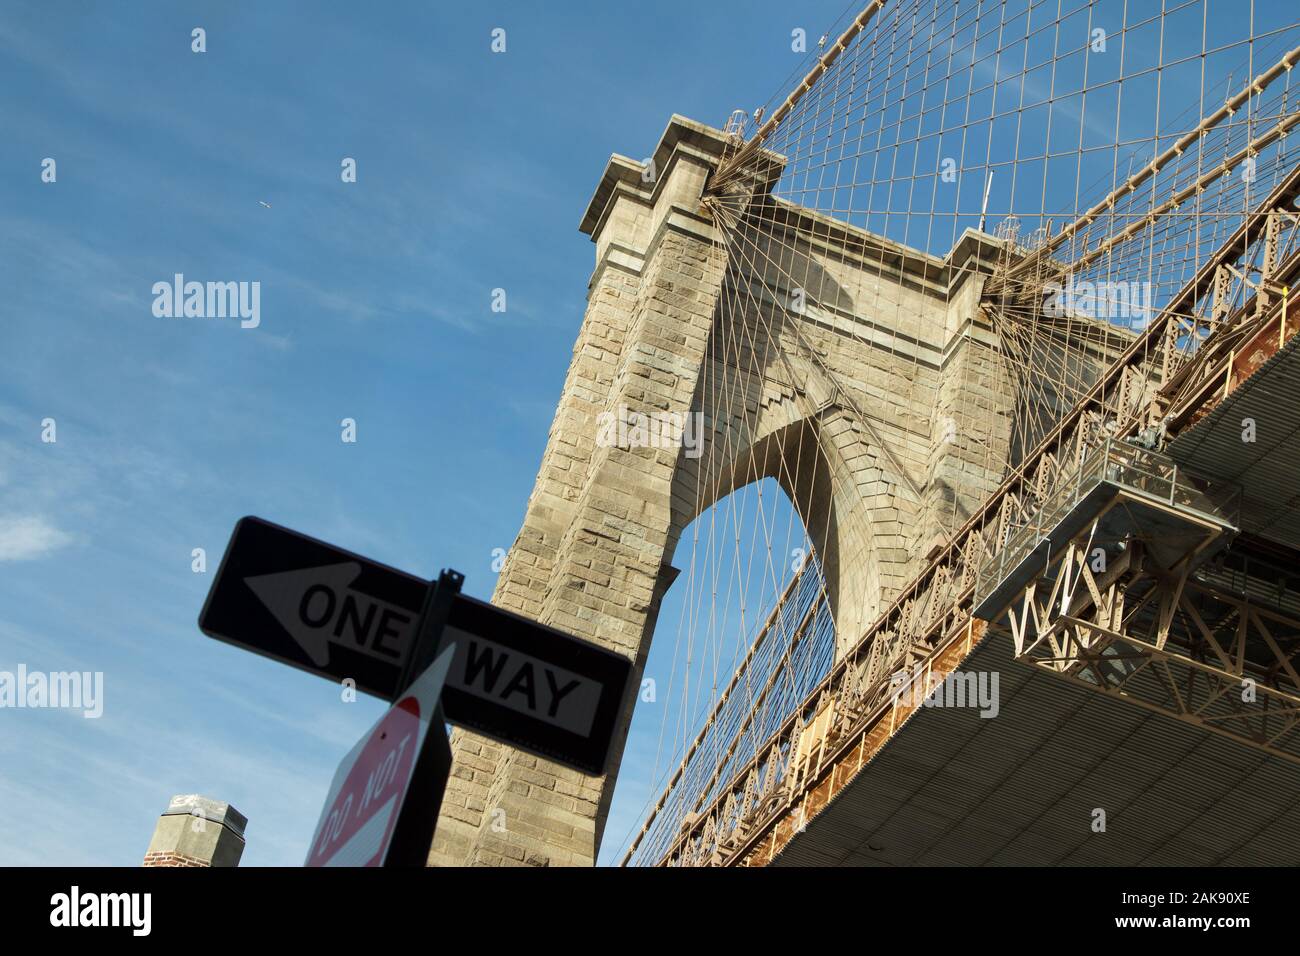 Ikonische Bild der Brooklyn Bridge bis auf eine blaue Tag mit Einbahnstraße Zeichen im Vordergrund. Stein Hängebrücke mit Drähten aus niedrig schauen gesehen Stockfoto